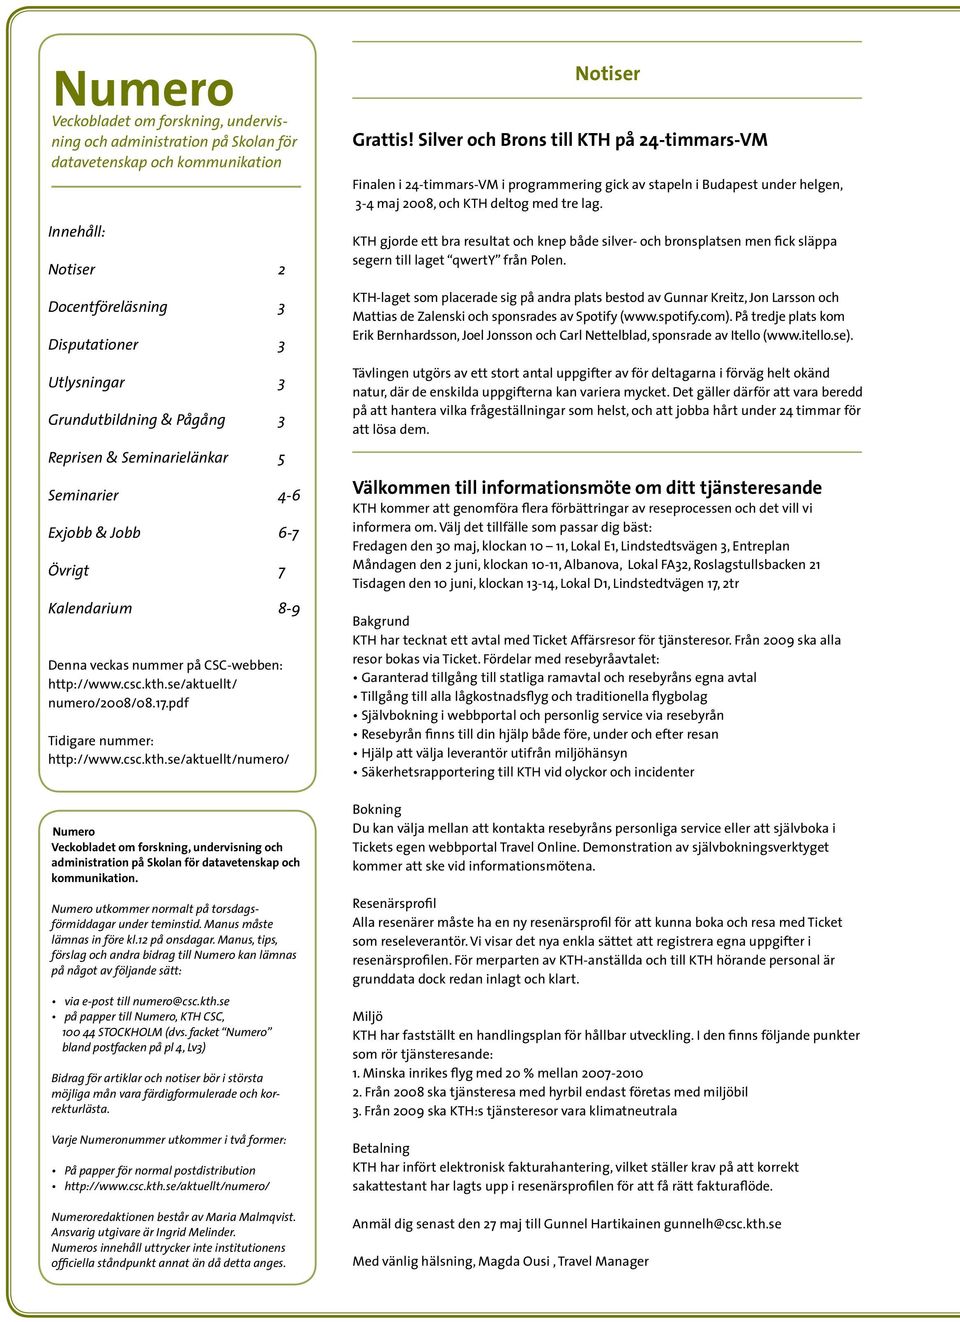 pdf Tidigare nummer: http://www.csc.kth.se/aktuellt/numero/ Numero Veckobladet om forskning, undervisning och administration på Skolan för datavetenskap och kommunikation.